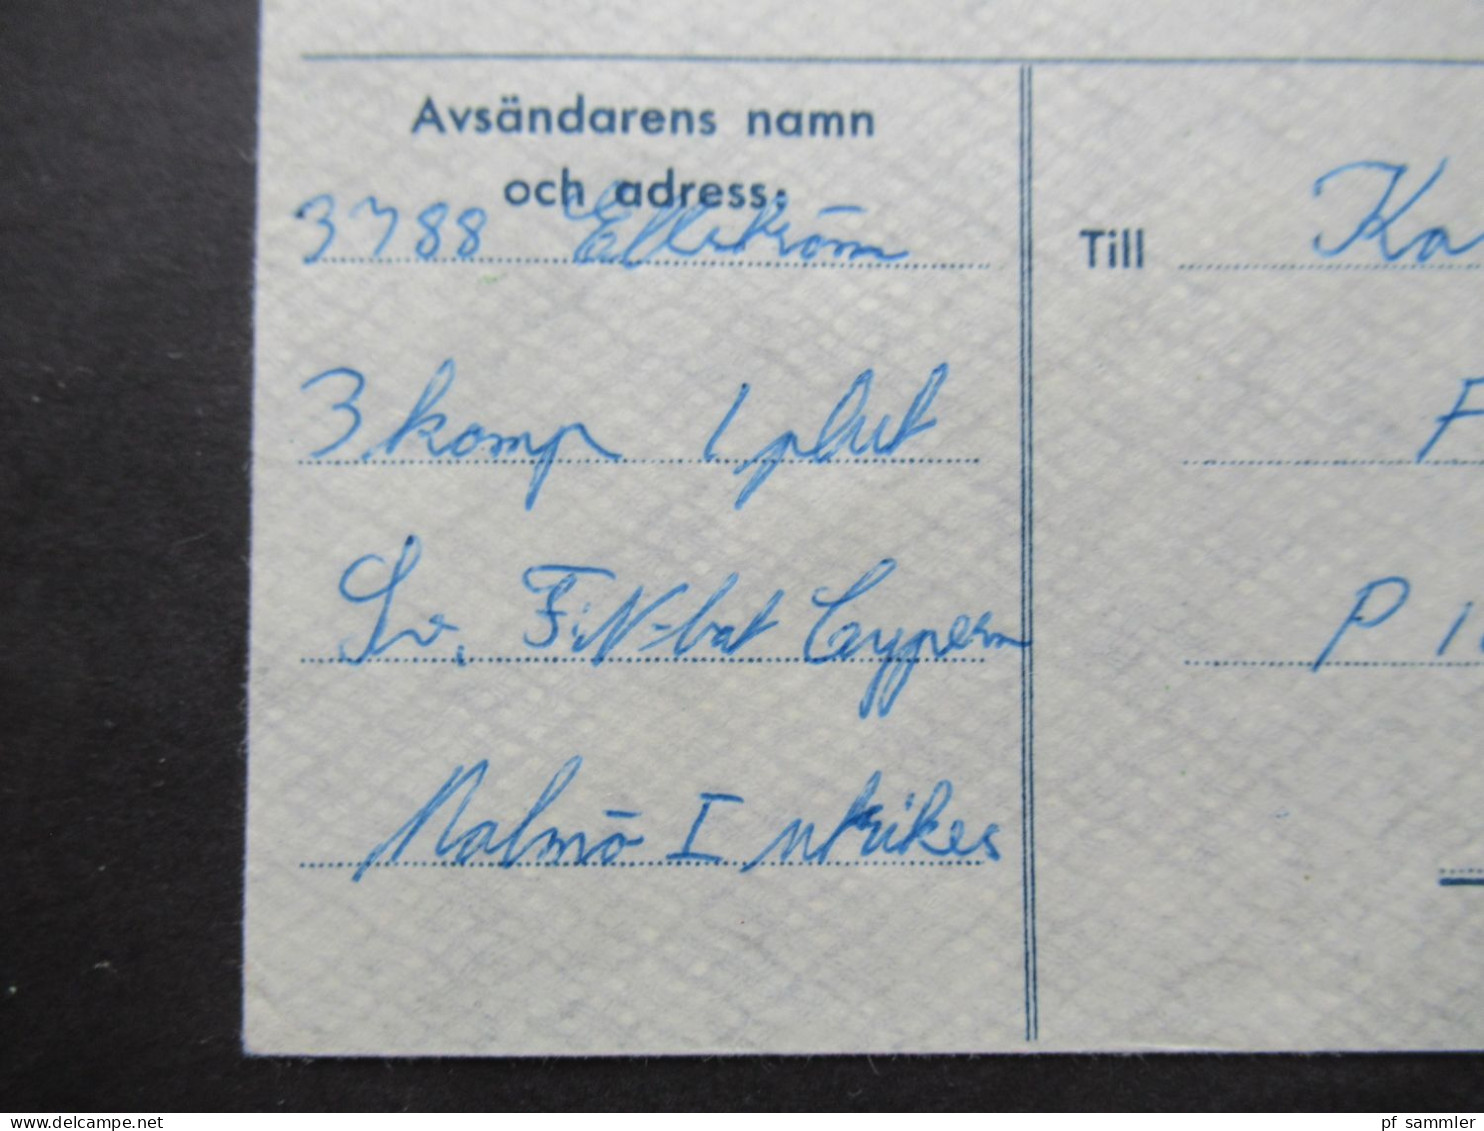 1965 Schweden Militärpost Militärbrev Stempel Svenska FN Bat Cypern / Schwedisches Militär Auf Zypern / FN Bat 3. Komp - Militärmarken